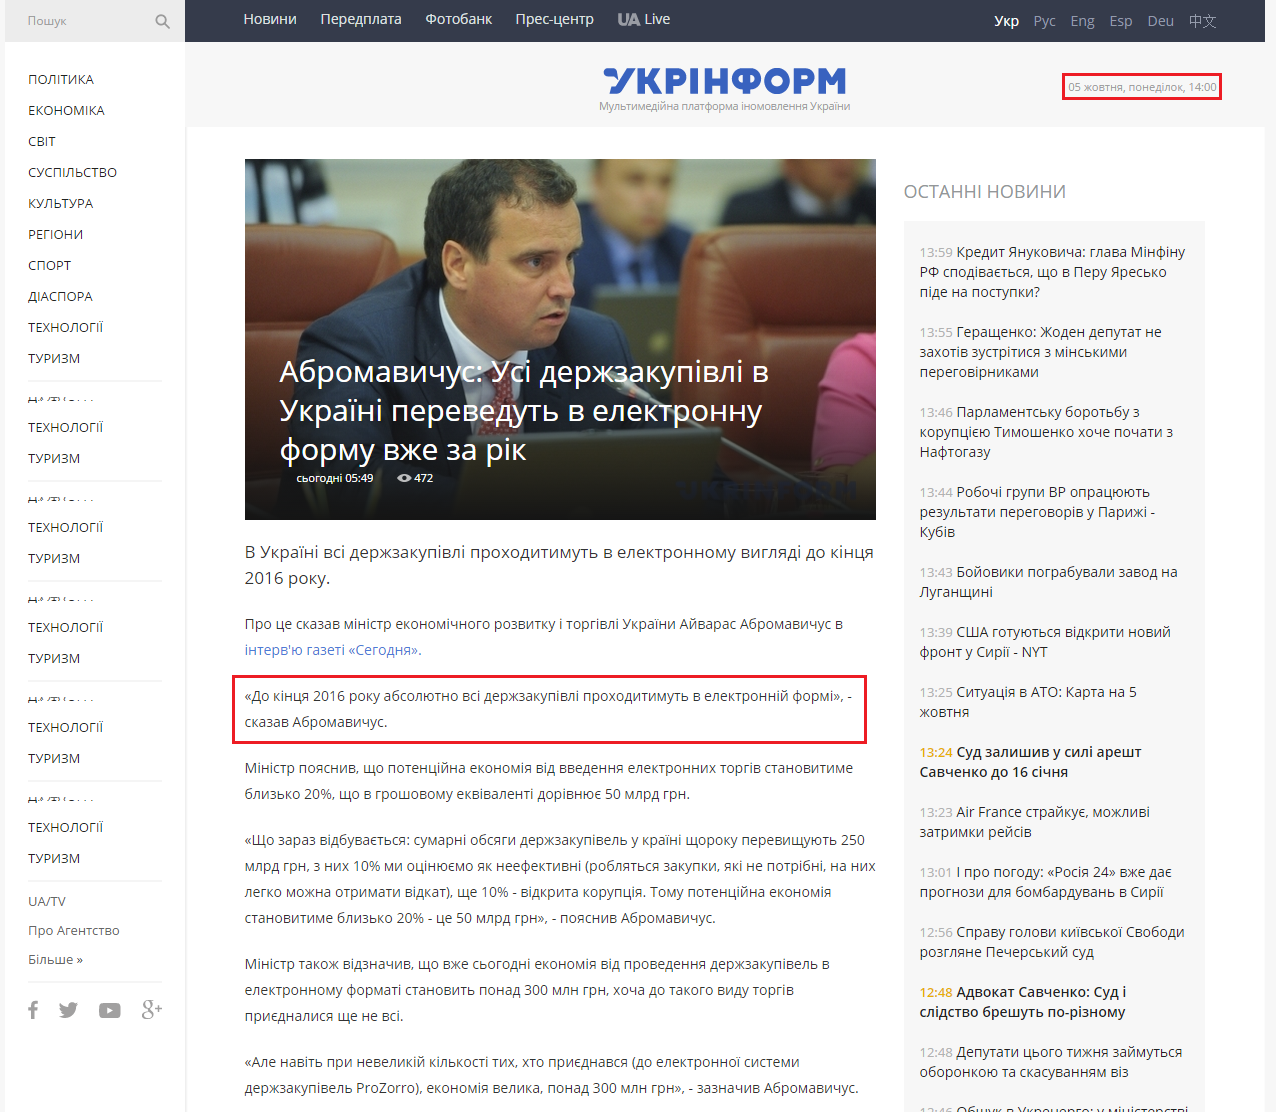 http://www.ukrinform.ua/rubric-economics/1892972-abromavichus-usi-derjzakupivli-v-ukrajini-perevedut-v-elektronnu-formu-vje-za-rik.html